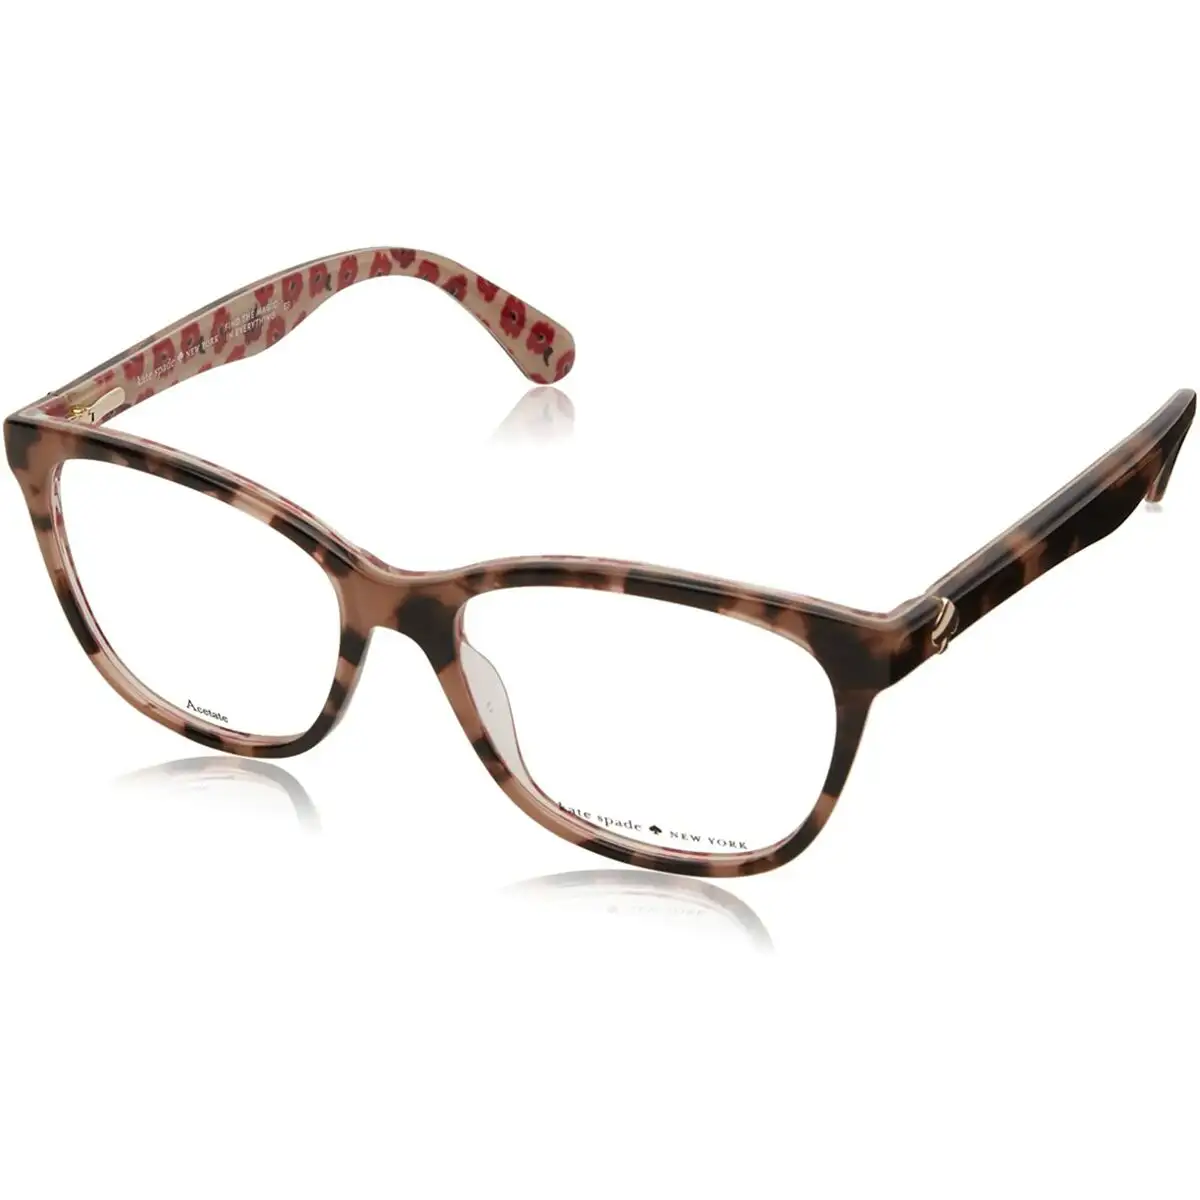 Monture de lunettes femme kate spade atalina_7971. DIAYTAR SENEGAL - Votre Plaisir Shopping à Portée de Clic. Explorez notre boutique en ligne et trouvez des produits qui ajoutent une touche de bonheur à votre vie quotidienne.